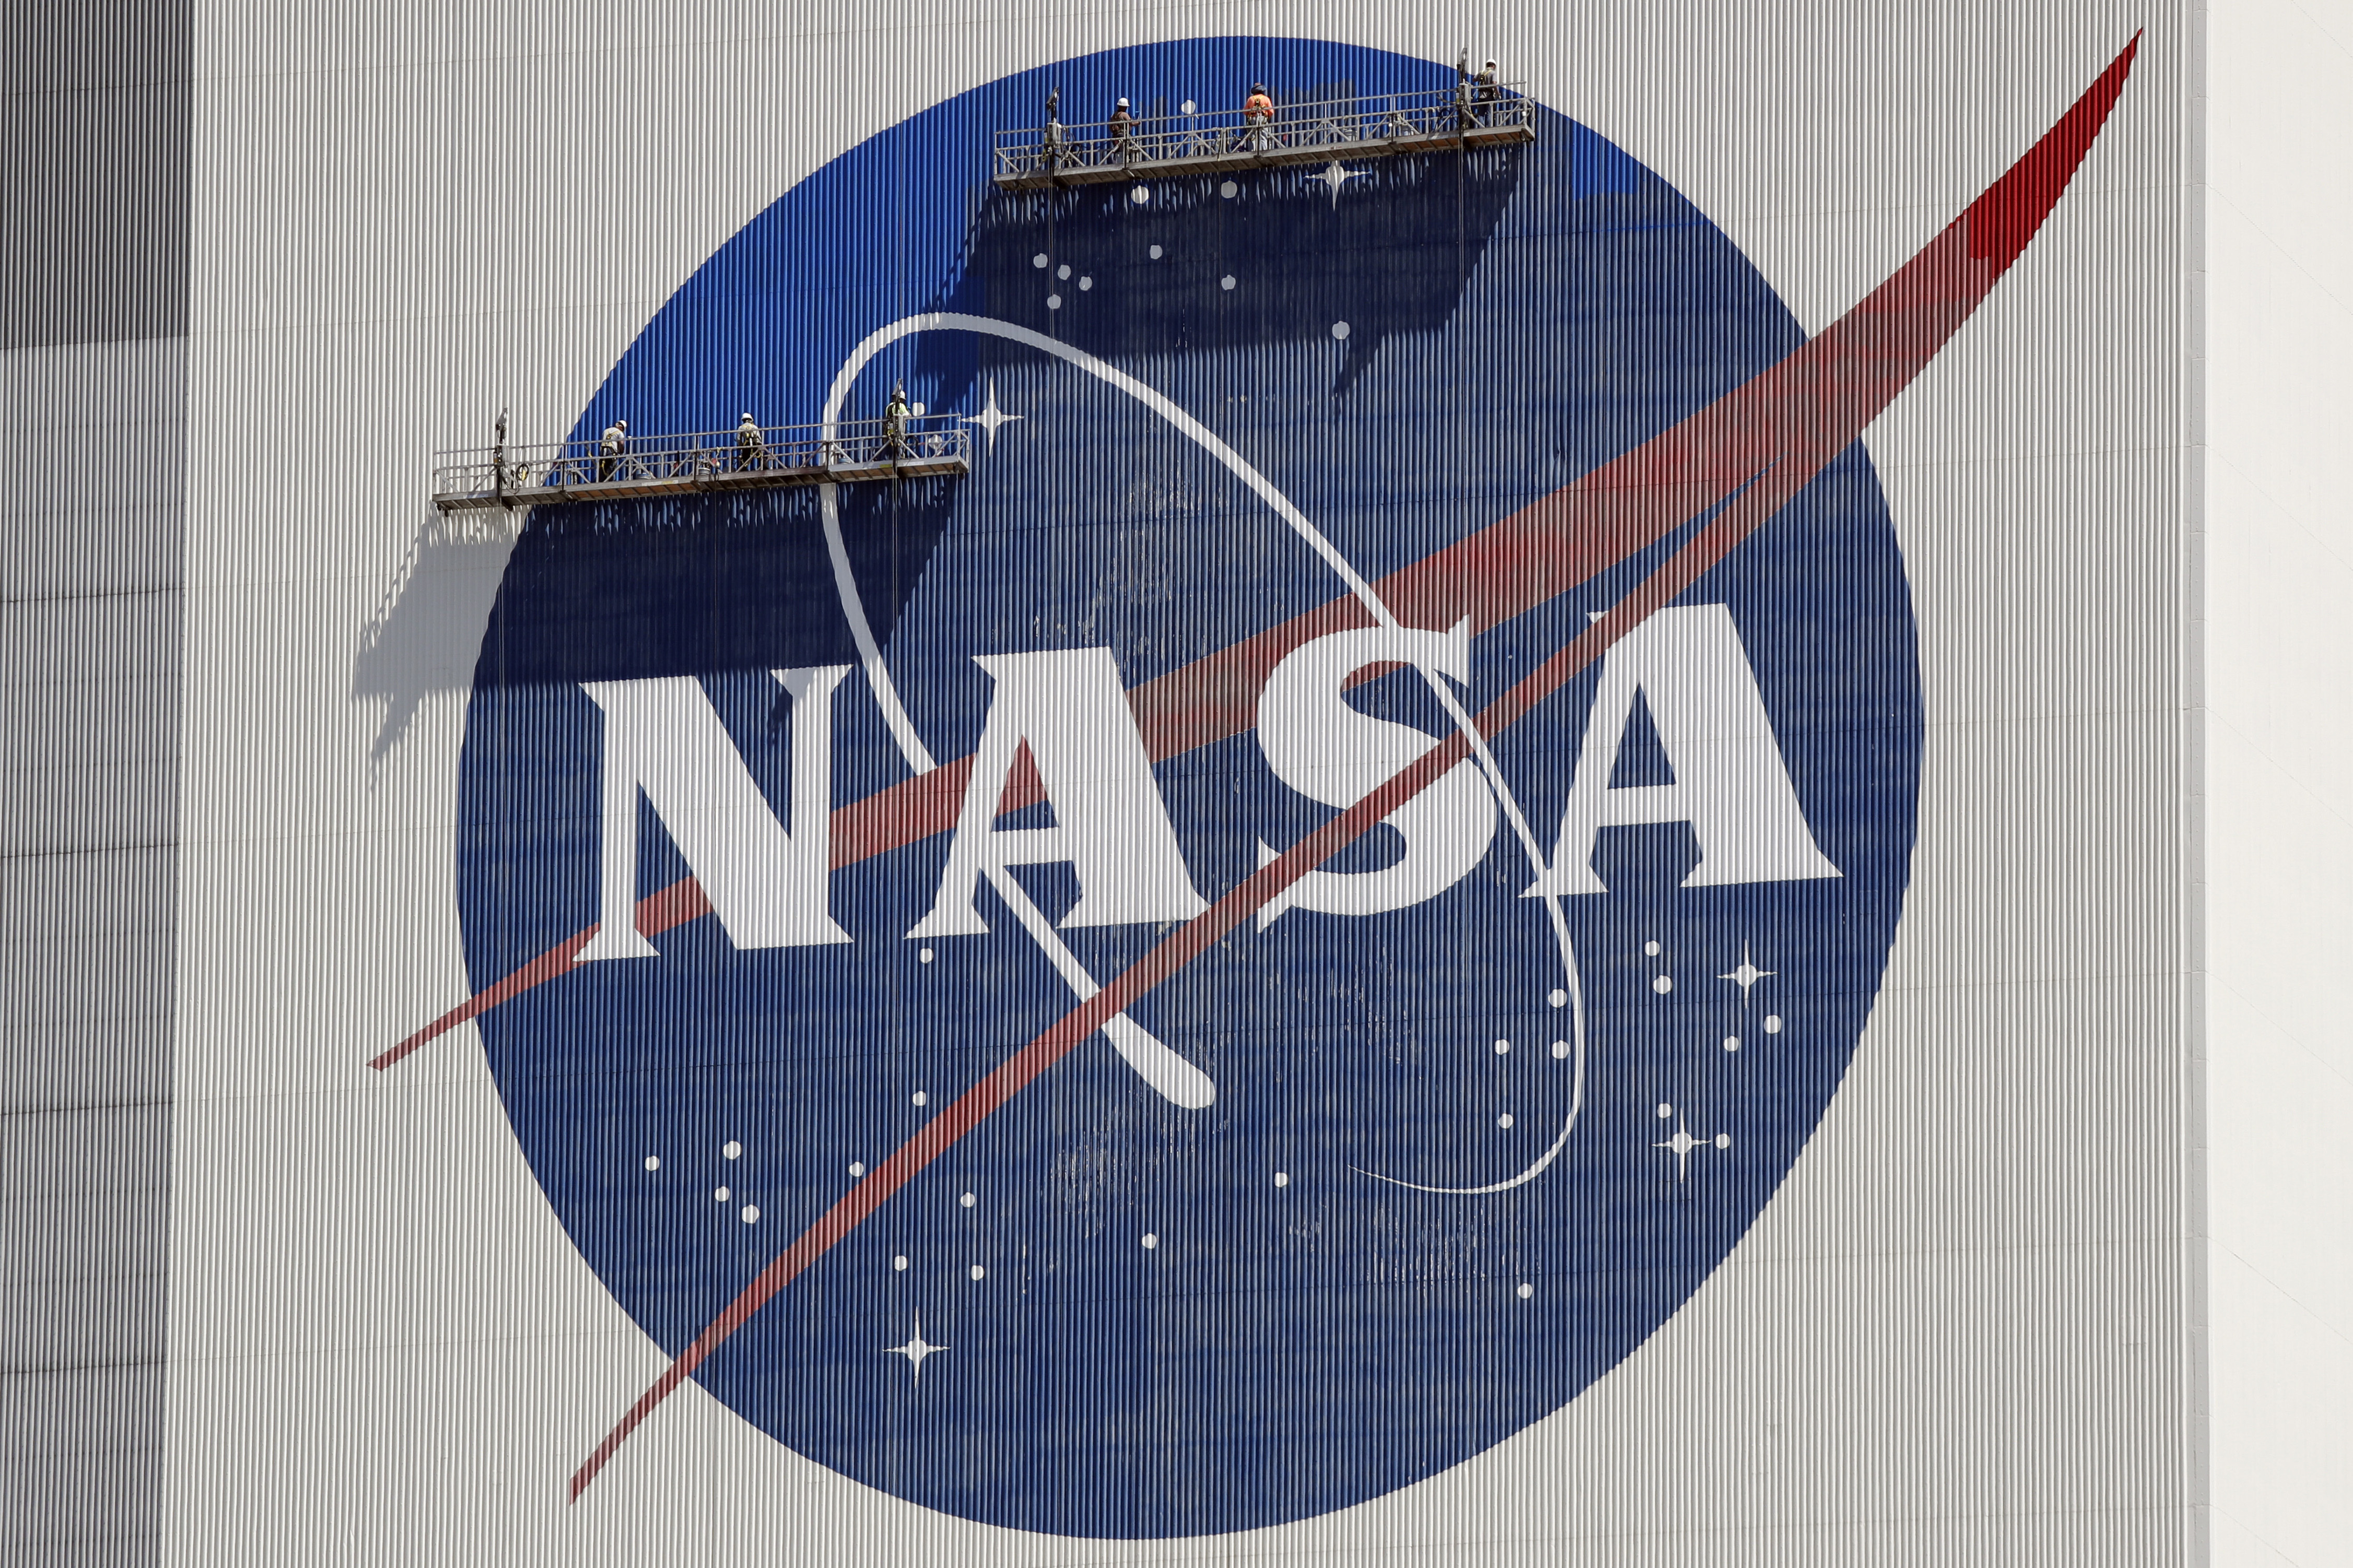 脚手架上的工人重新粉刷靠近飞行器组件顶部的 NASA 徽标肯尼迪航天中心大楼